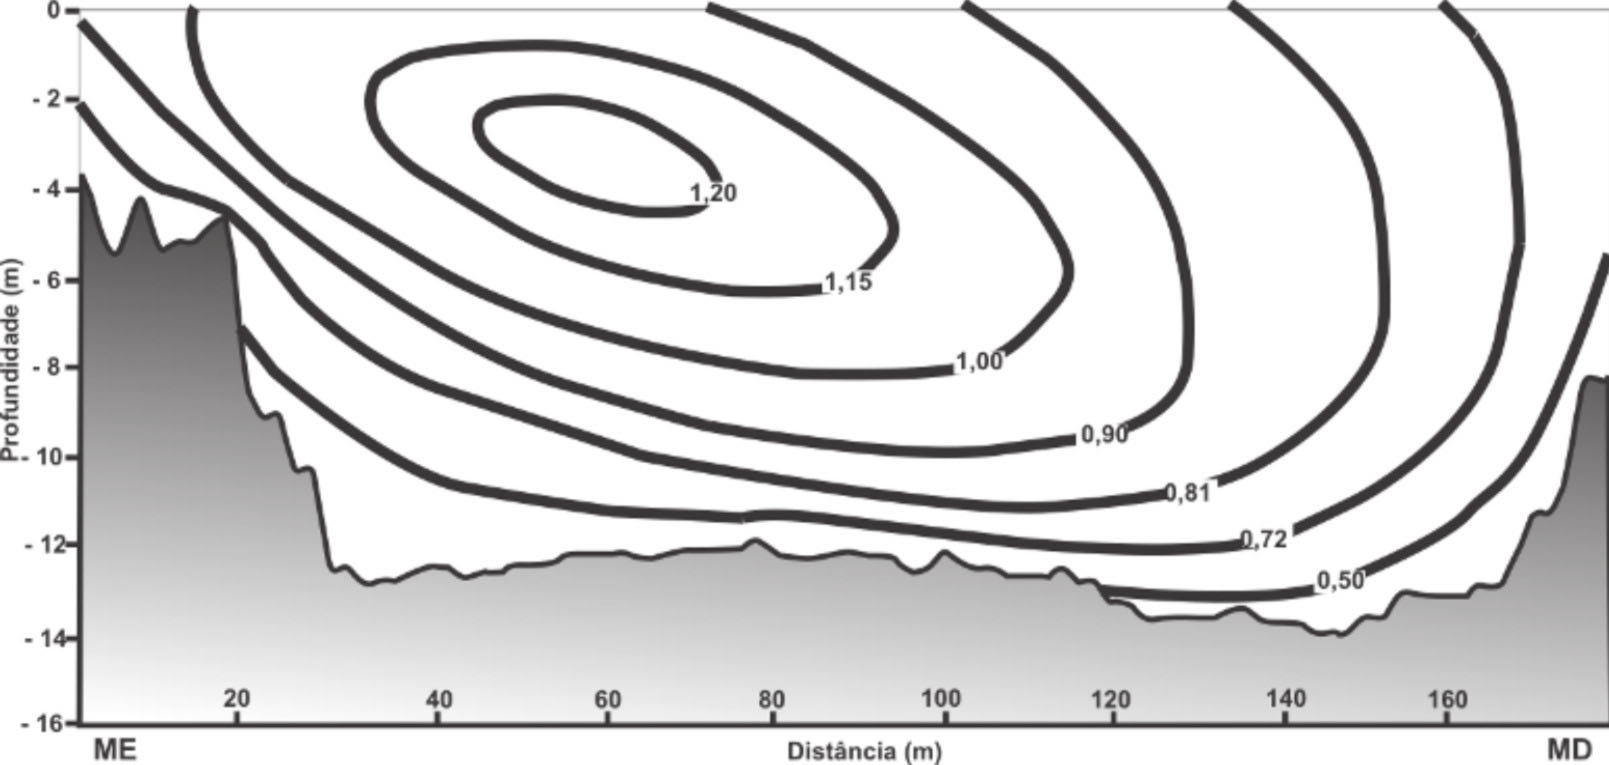 FIGURA 3. Morfologia do leito em perfil transversal do rio Ivaí em Tapira (março). Isolíneas de velocidade do fluxo com maior velocidade registrada em subsuperfície próxima ao centro do canal.